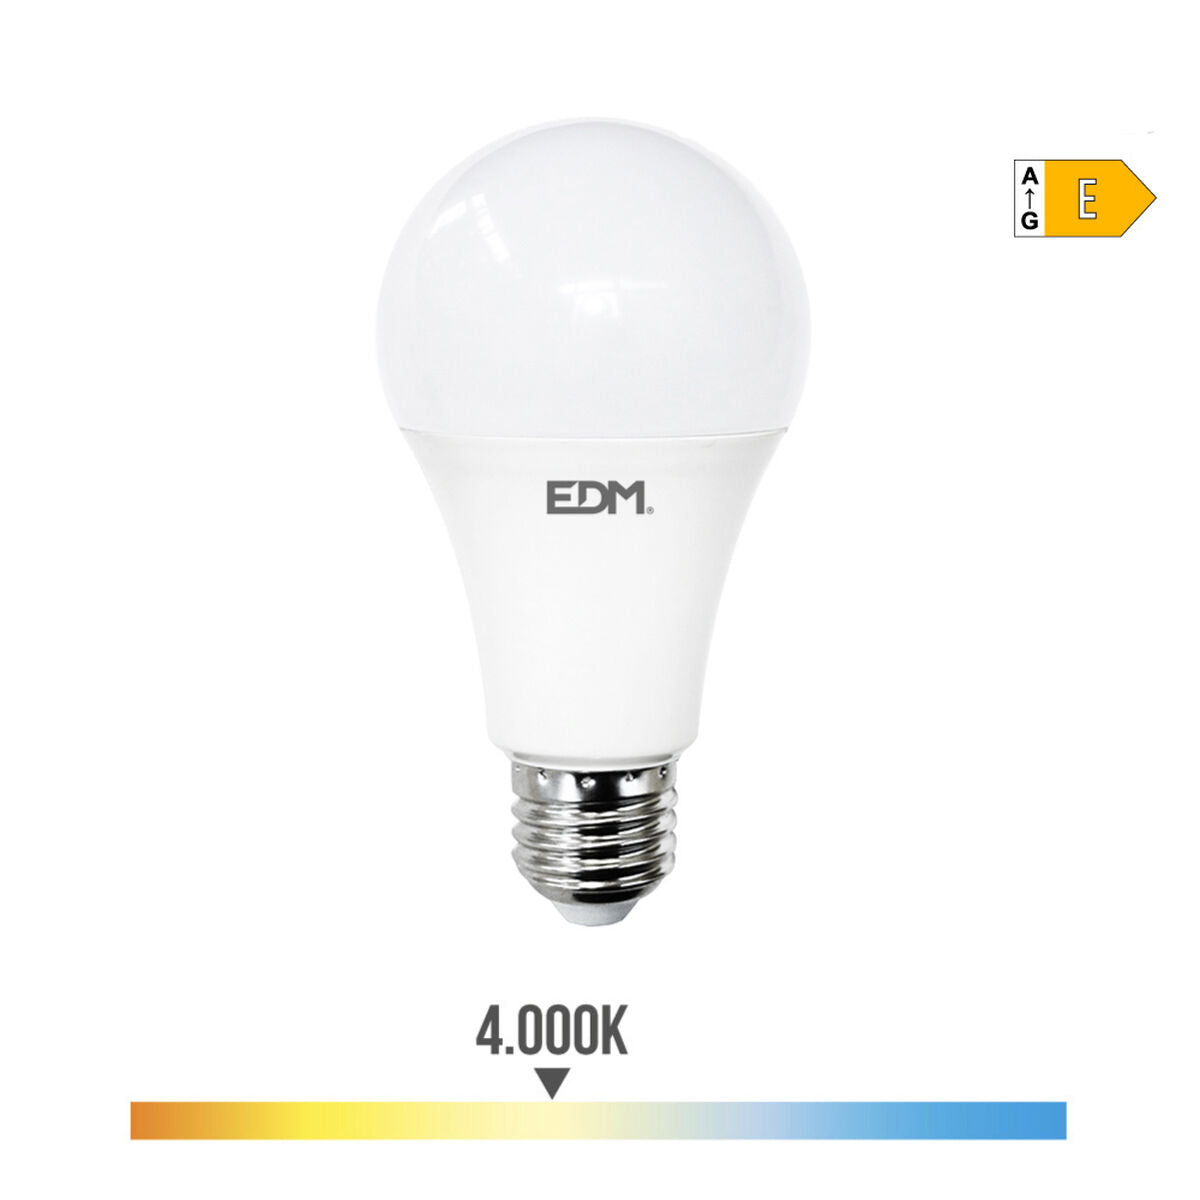 LED lamp EDM E 24 W E27 2700 lm Ø 7 x 13,6 cm (4000 K)